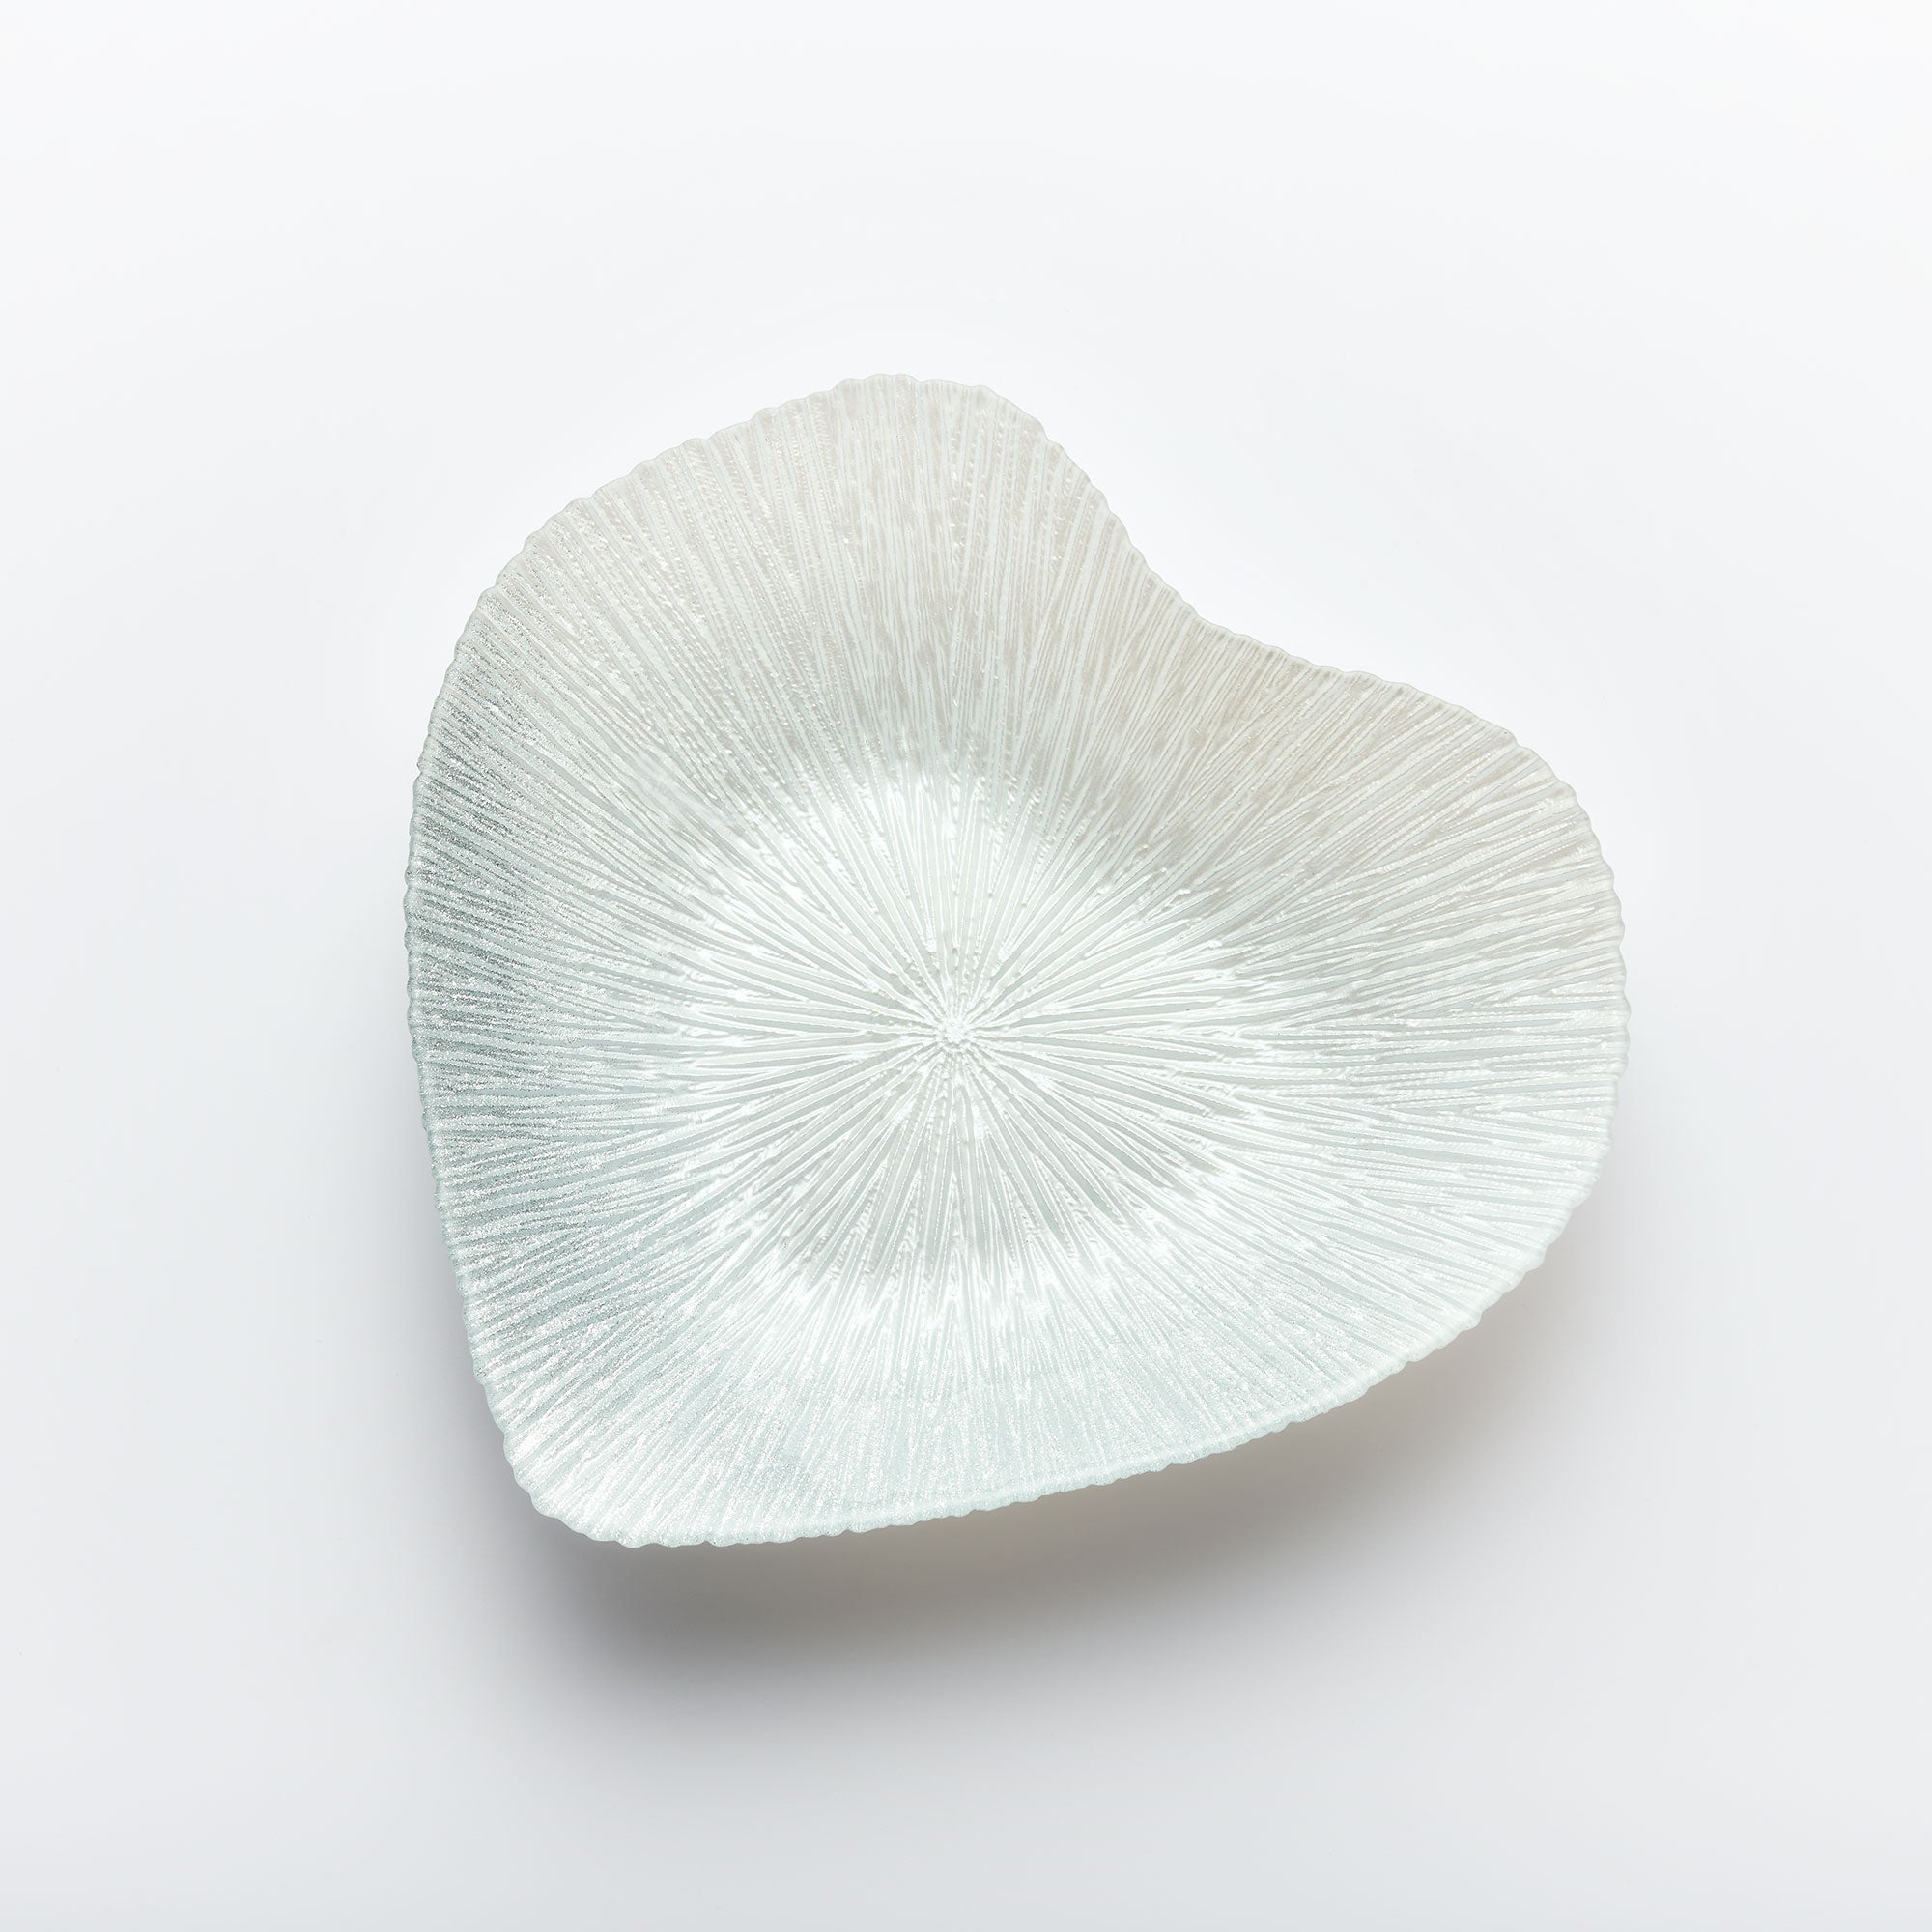 Glass Bowl - Heart Design - Silver - Aspire Art Glass